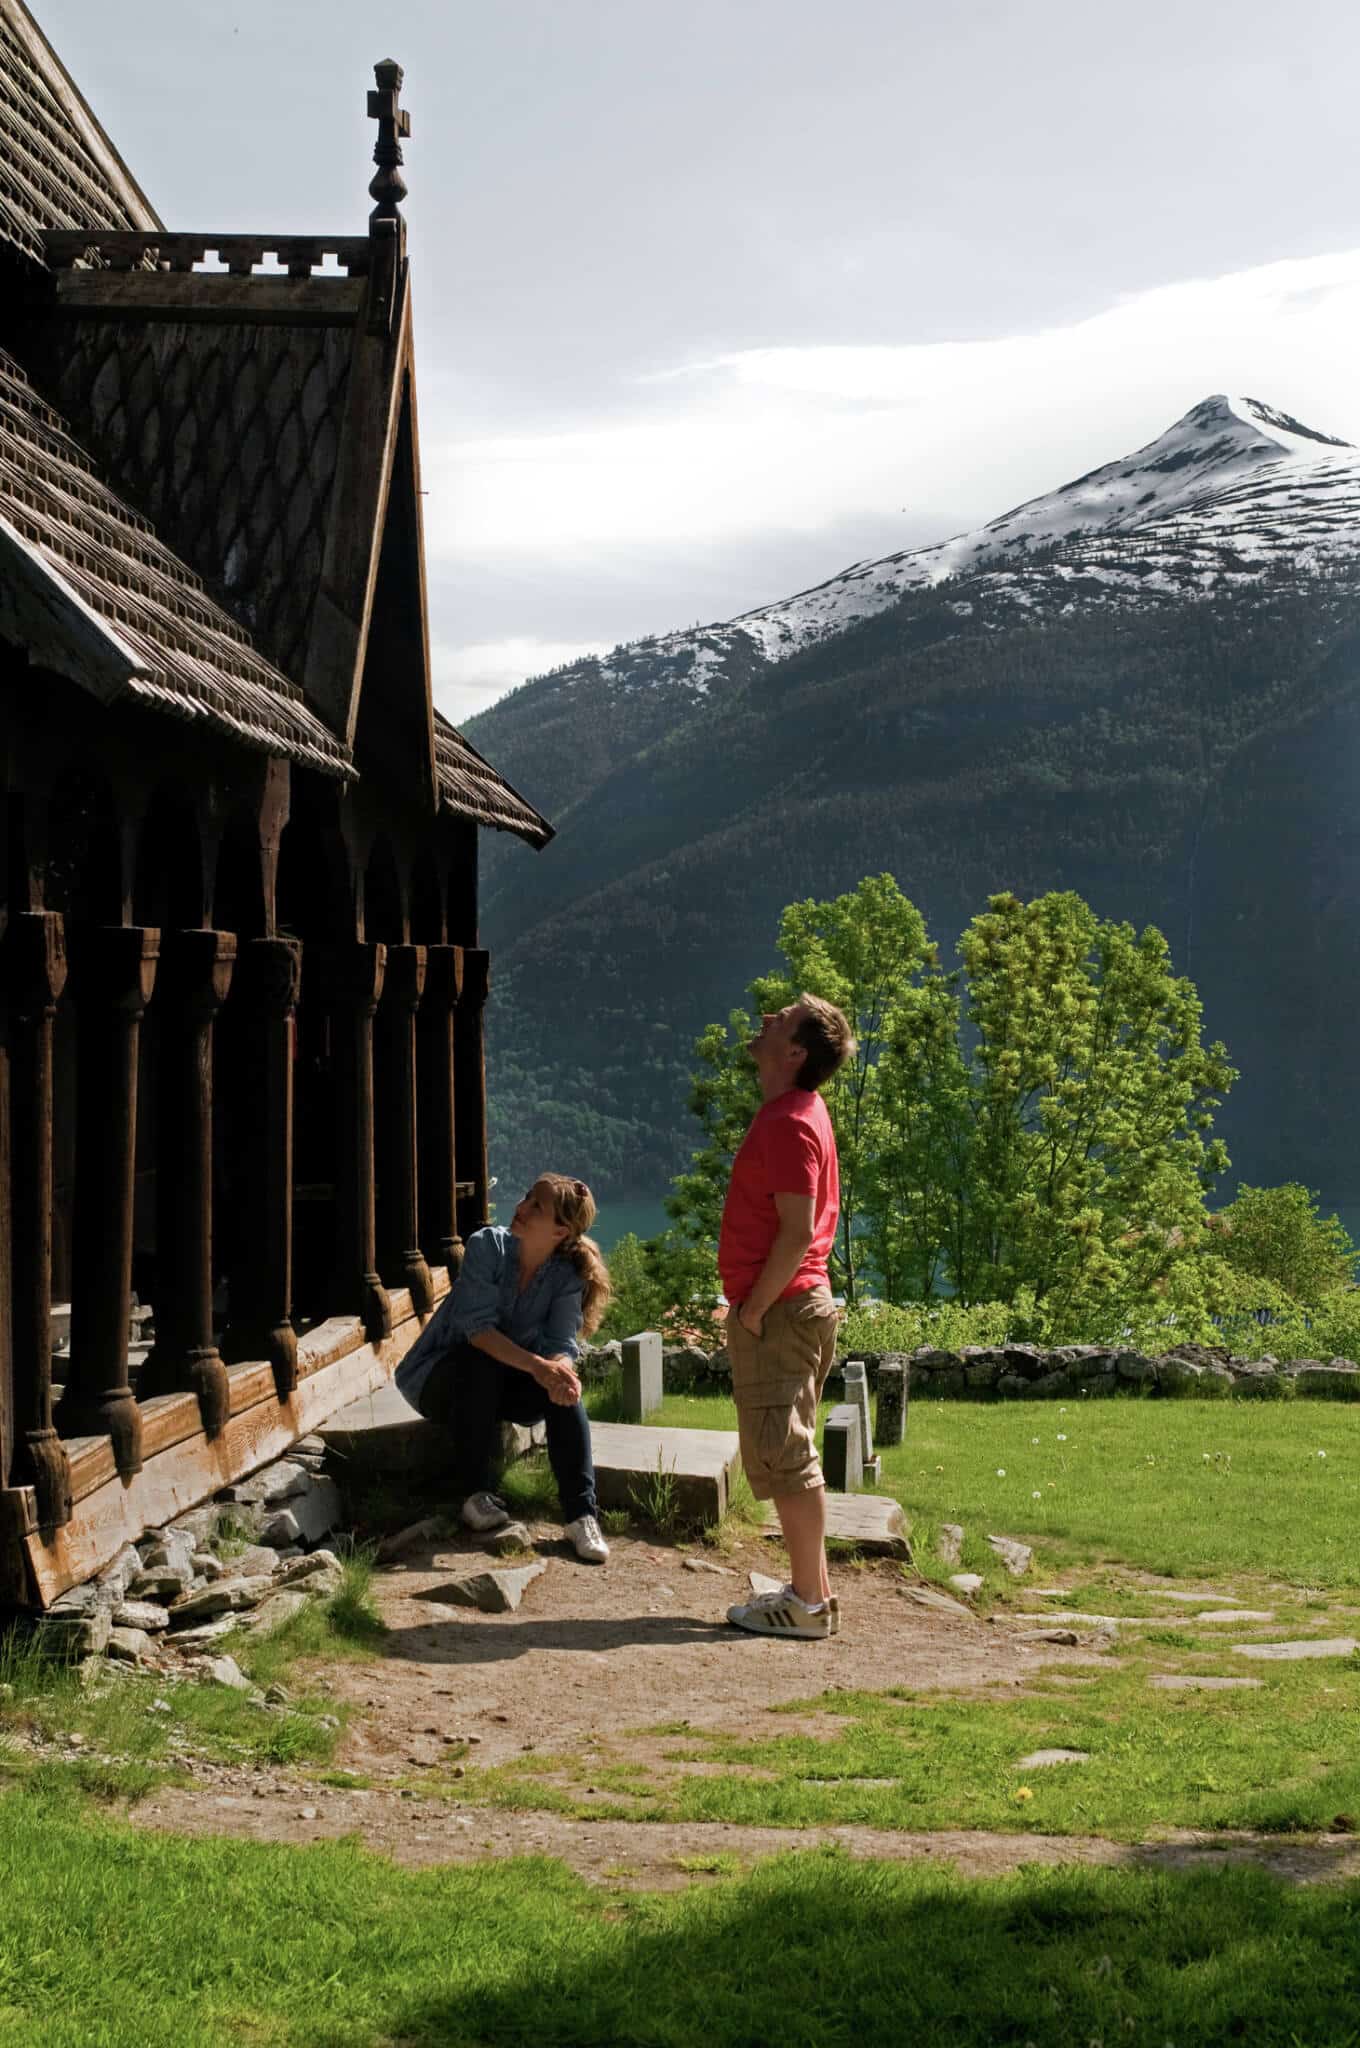 Urnes Stave Templom – Norvégia számos dongatemplomának egyike